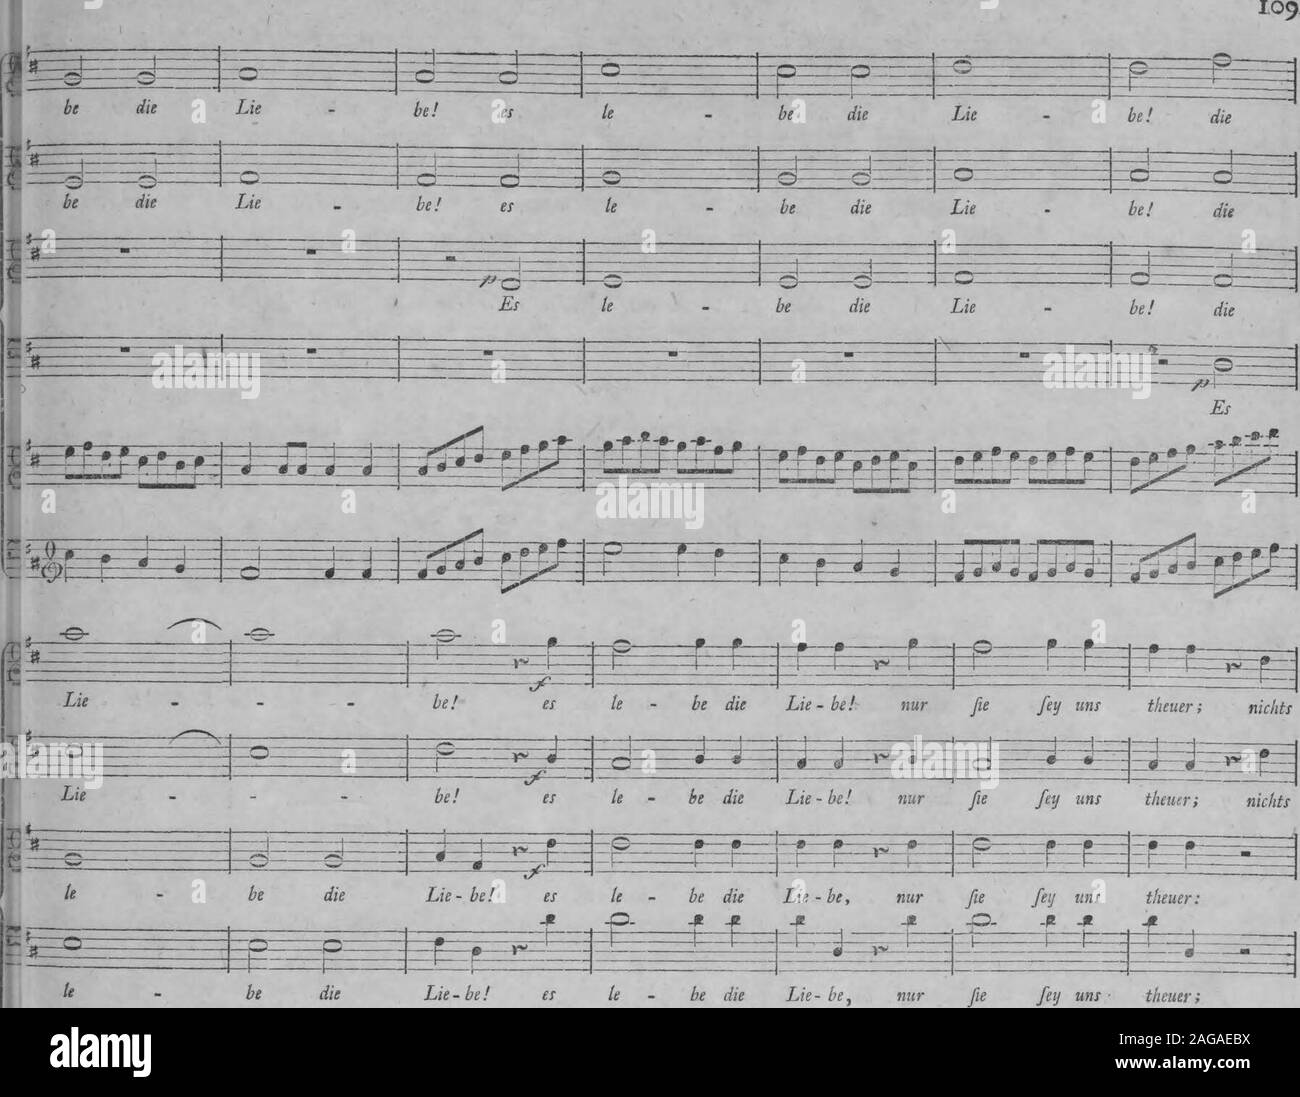 . Die Entfuhrung aus dem Serail : ein komisches Singspiel in drey Aufzugen (1796). m. jy^^^^^^^^g^y^^f^^a^^i^^ Mozart, Entführ, aus dem Serail. Stock Photo